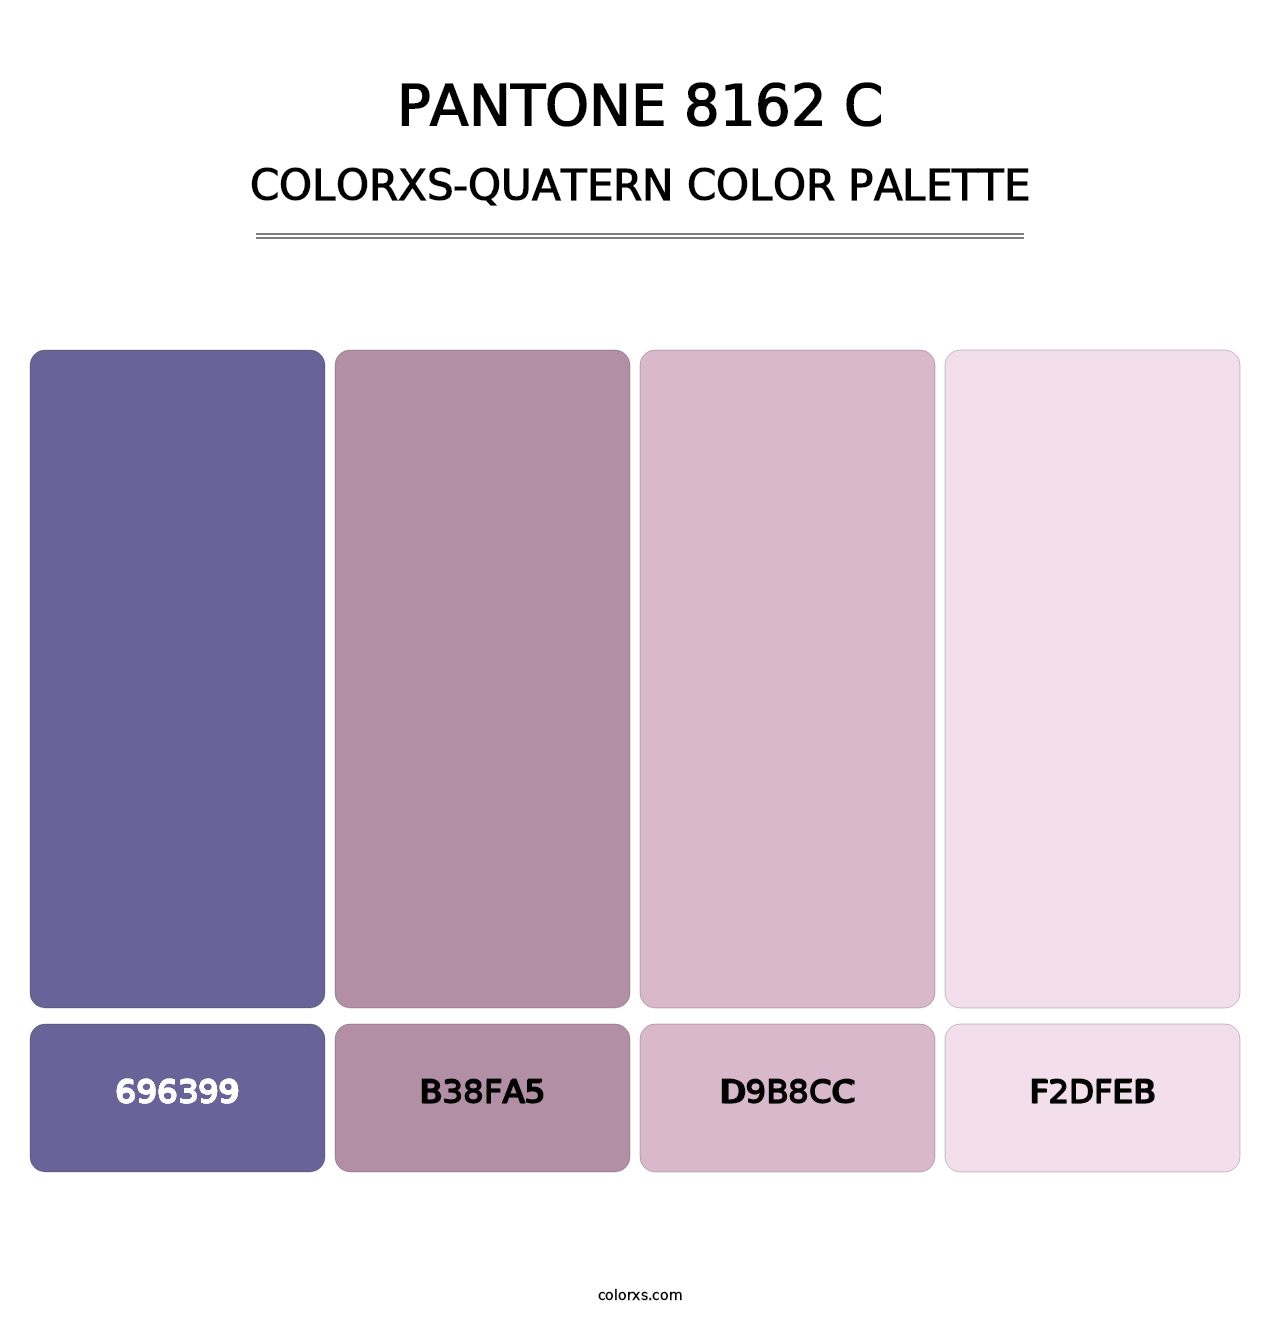 PANTONE 8162 C - Colorxs Quatern Palette